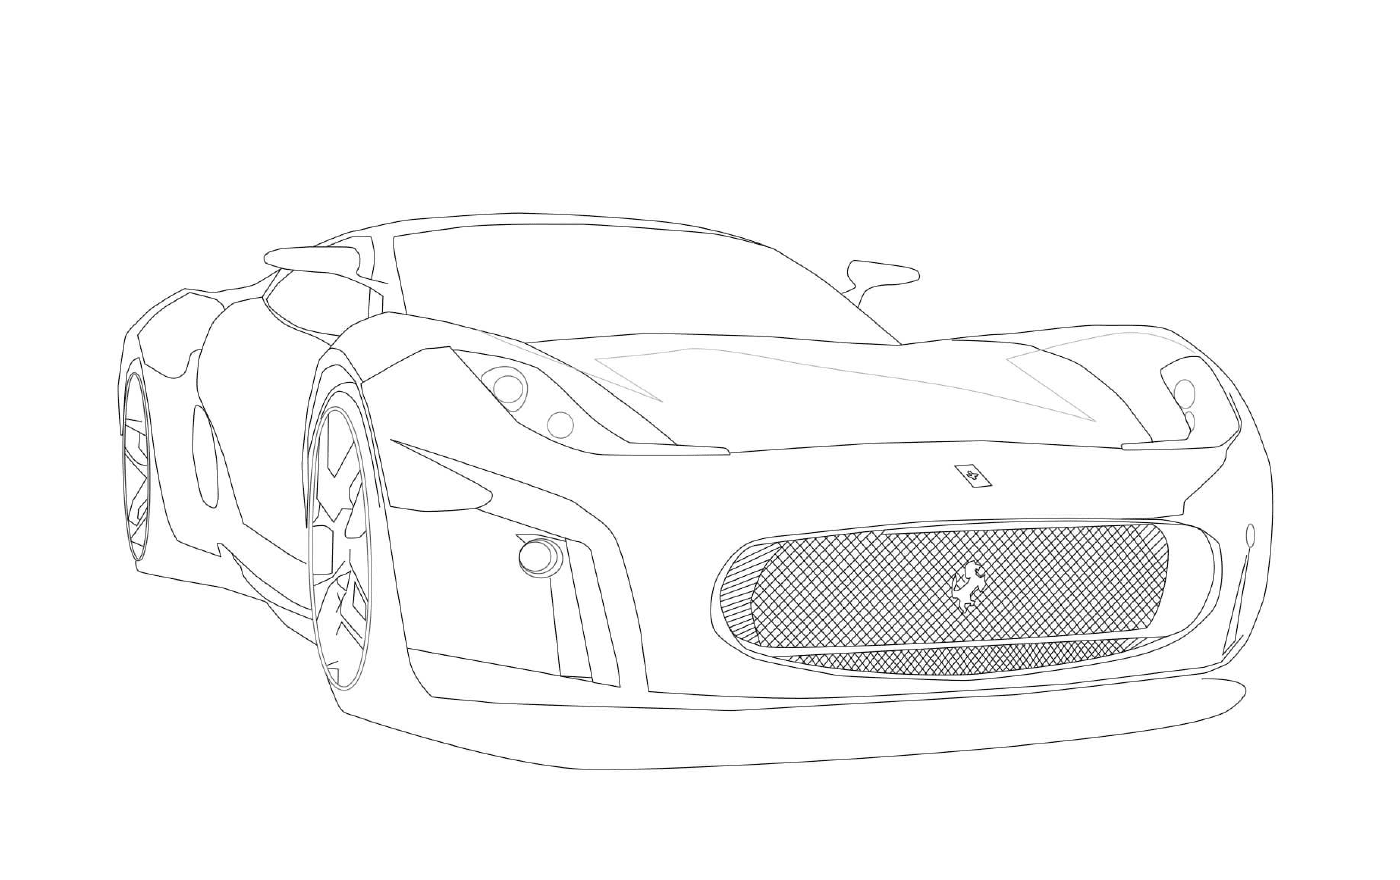  Ferrari racing car 